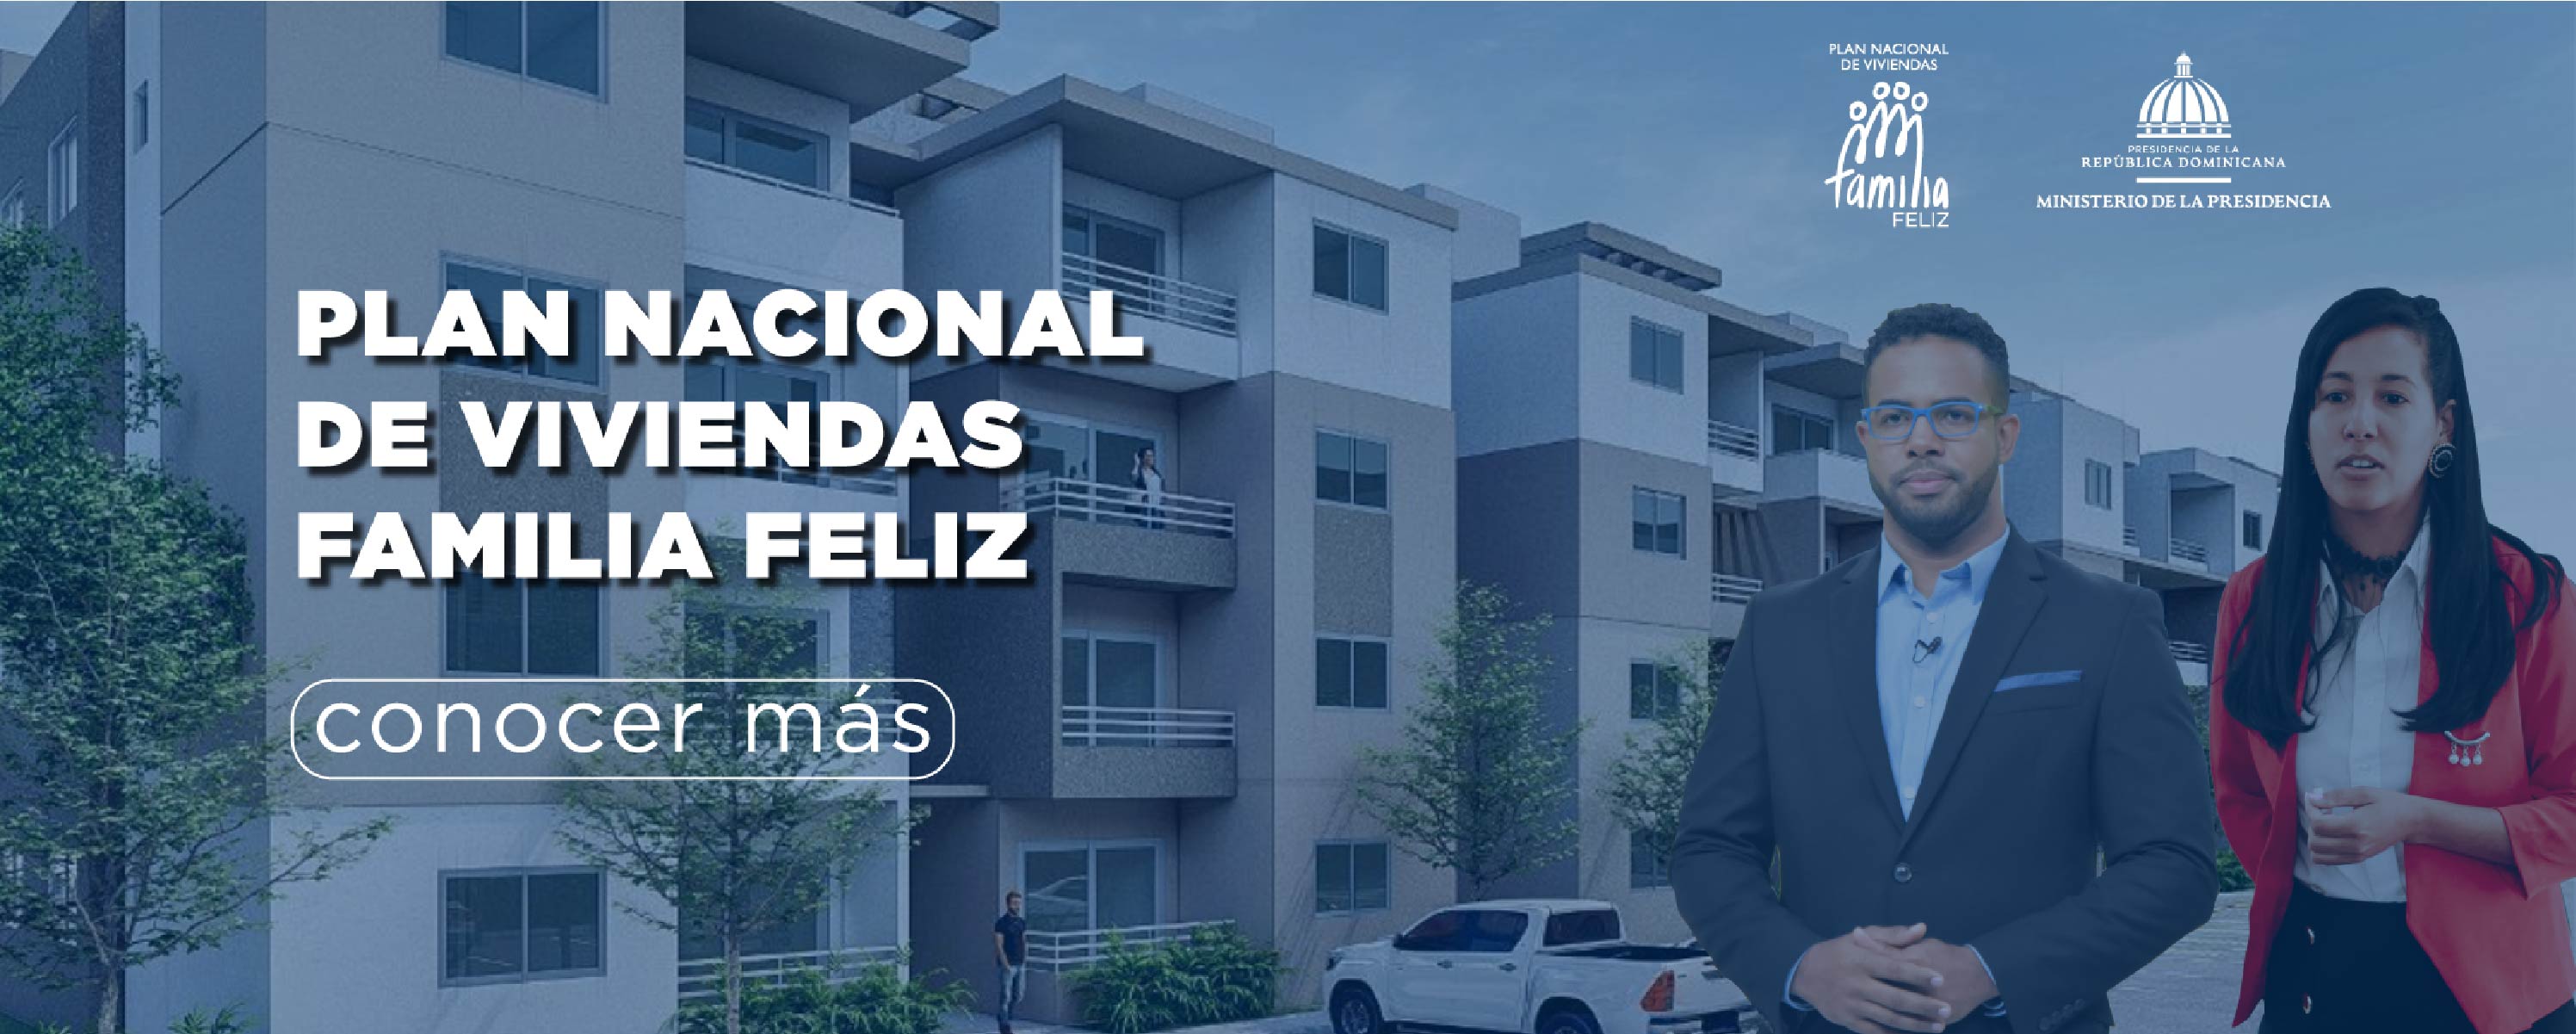 Plan Nacional de viviendas Familia Feliz. 